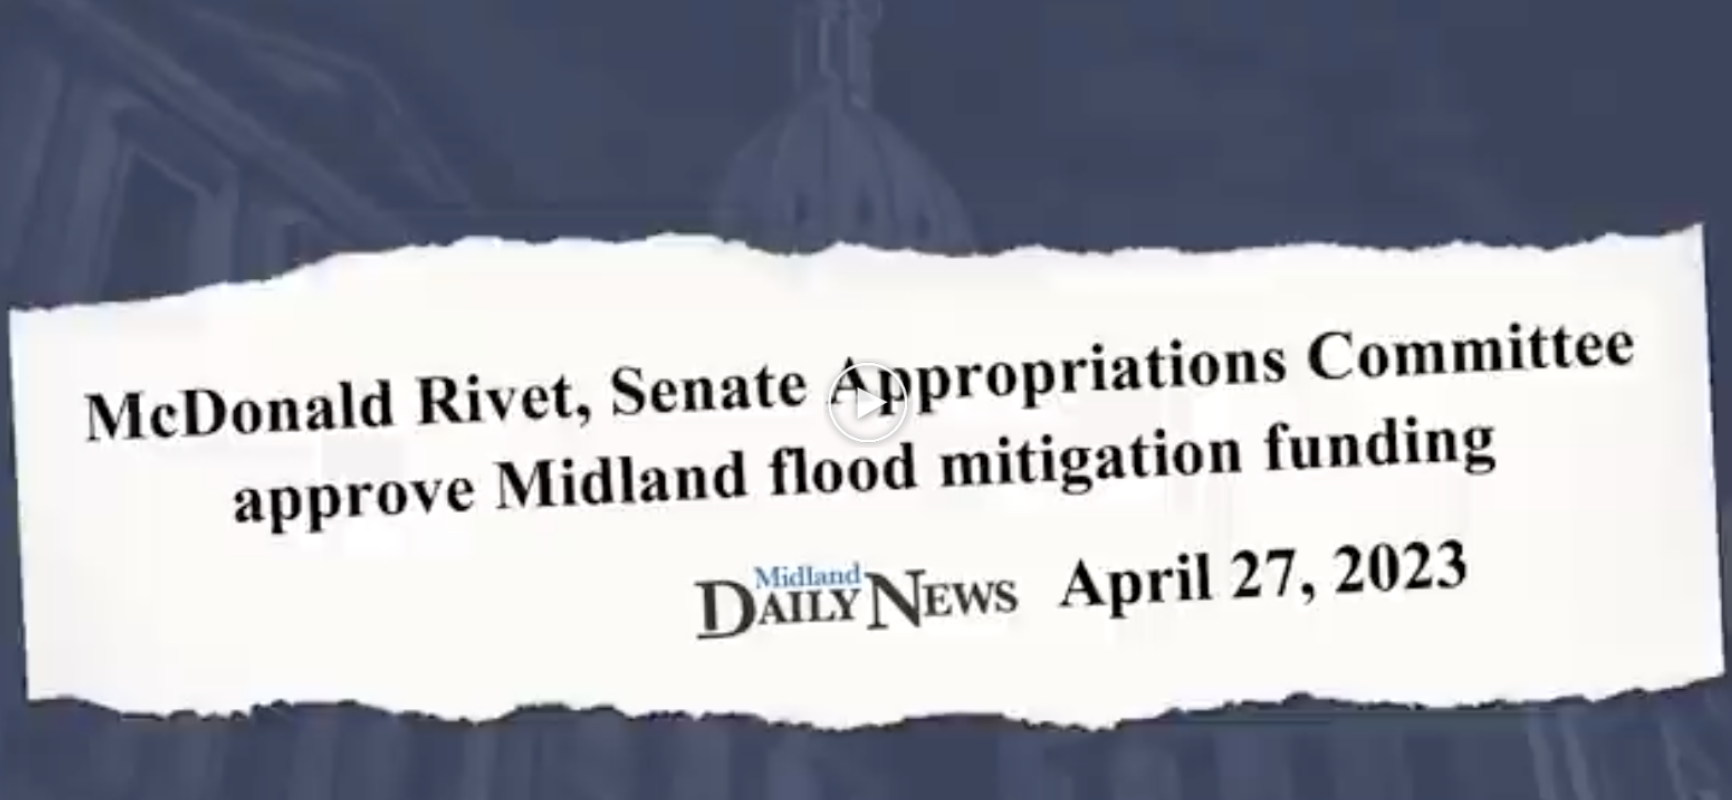 Midland Flood Mitigation